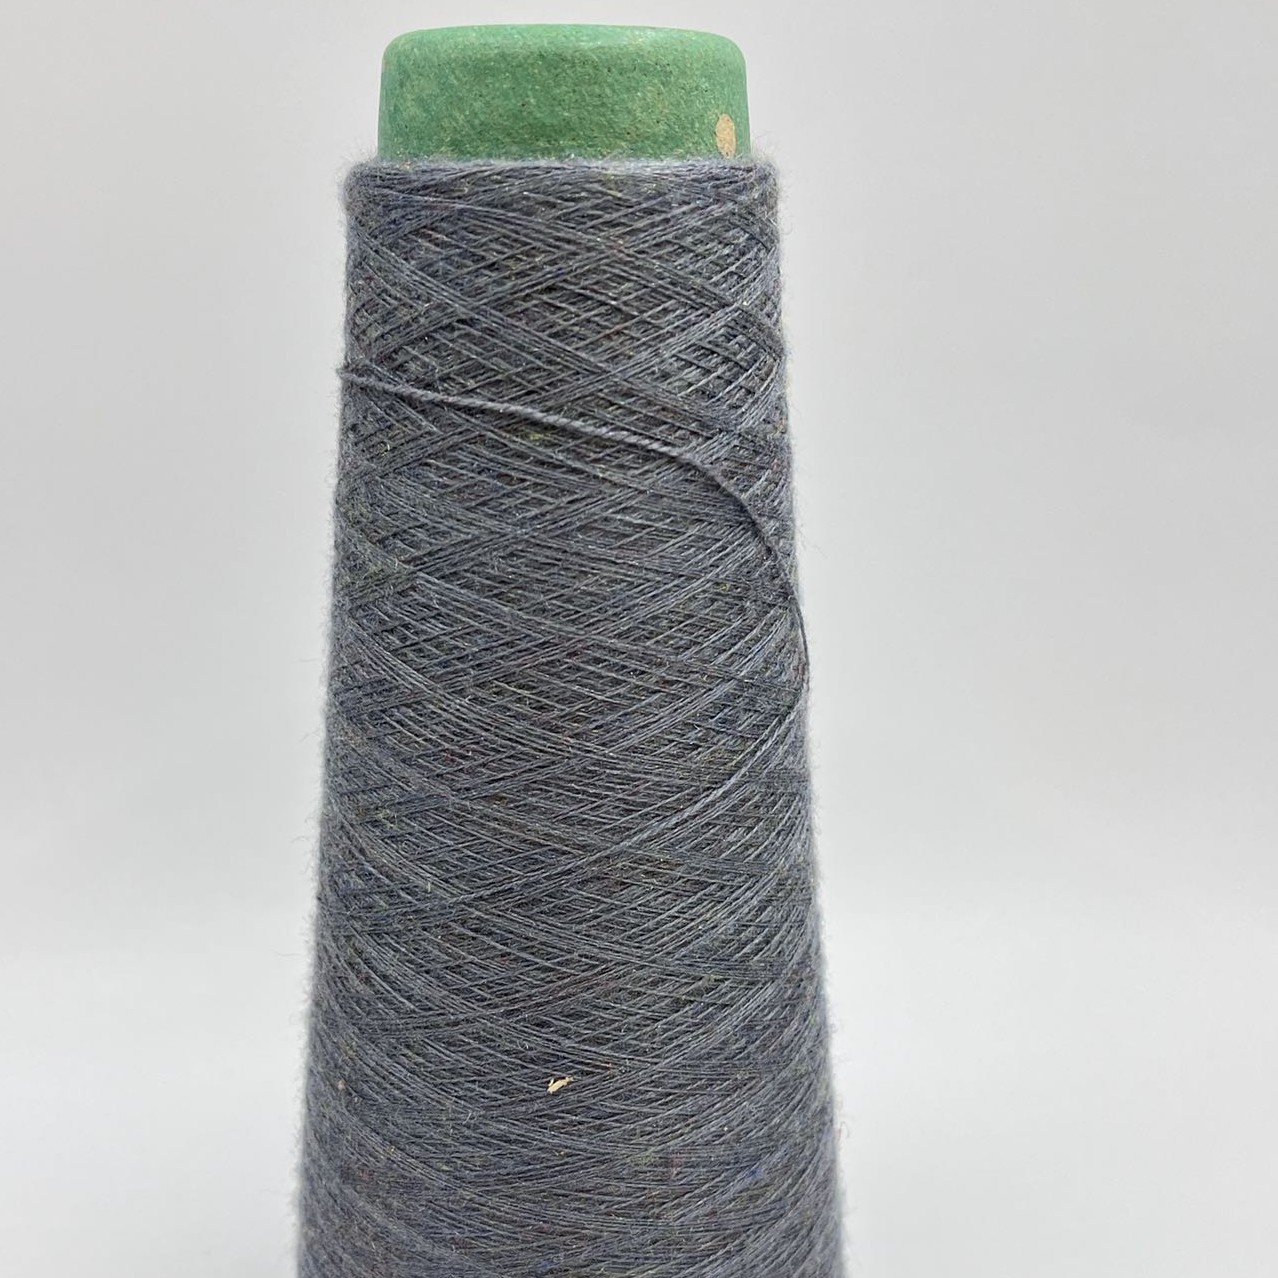 Pabrika nga pakyawan nga libre nga mga sample nga sinagol nga core spun yarn knitting yarns para ibaligya Featured Image